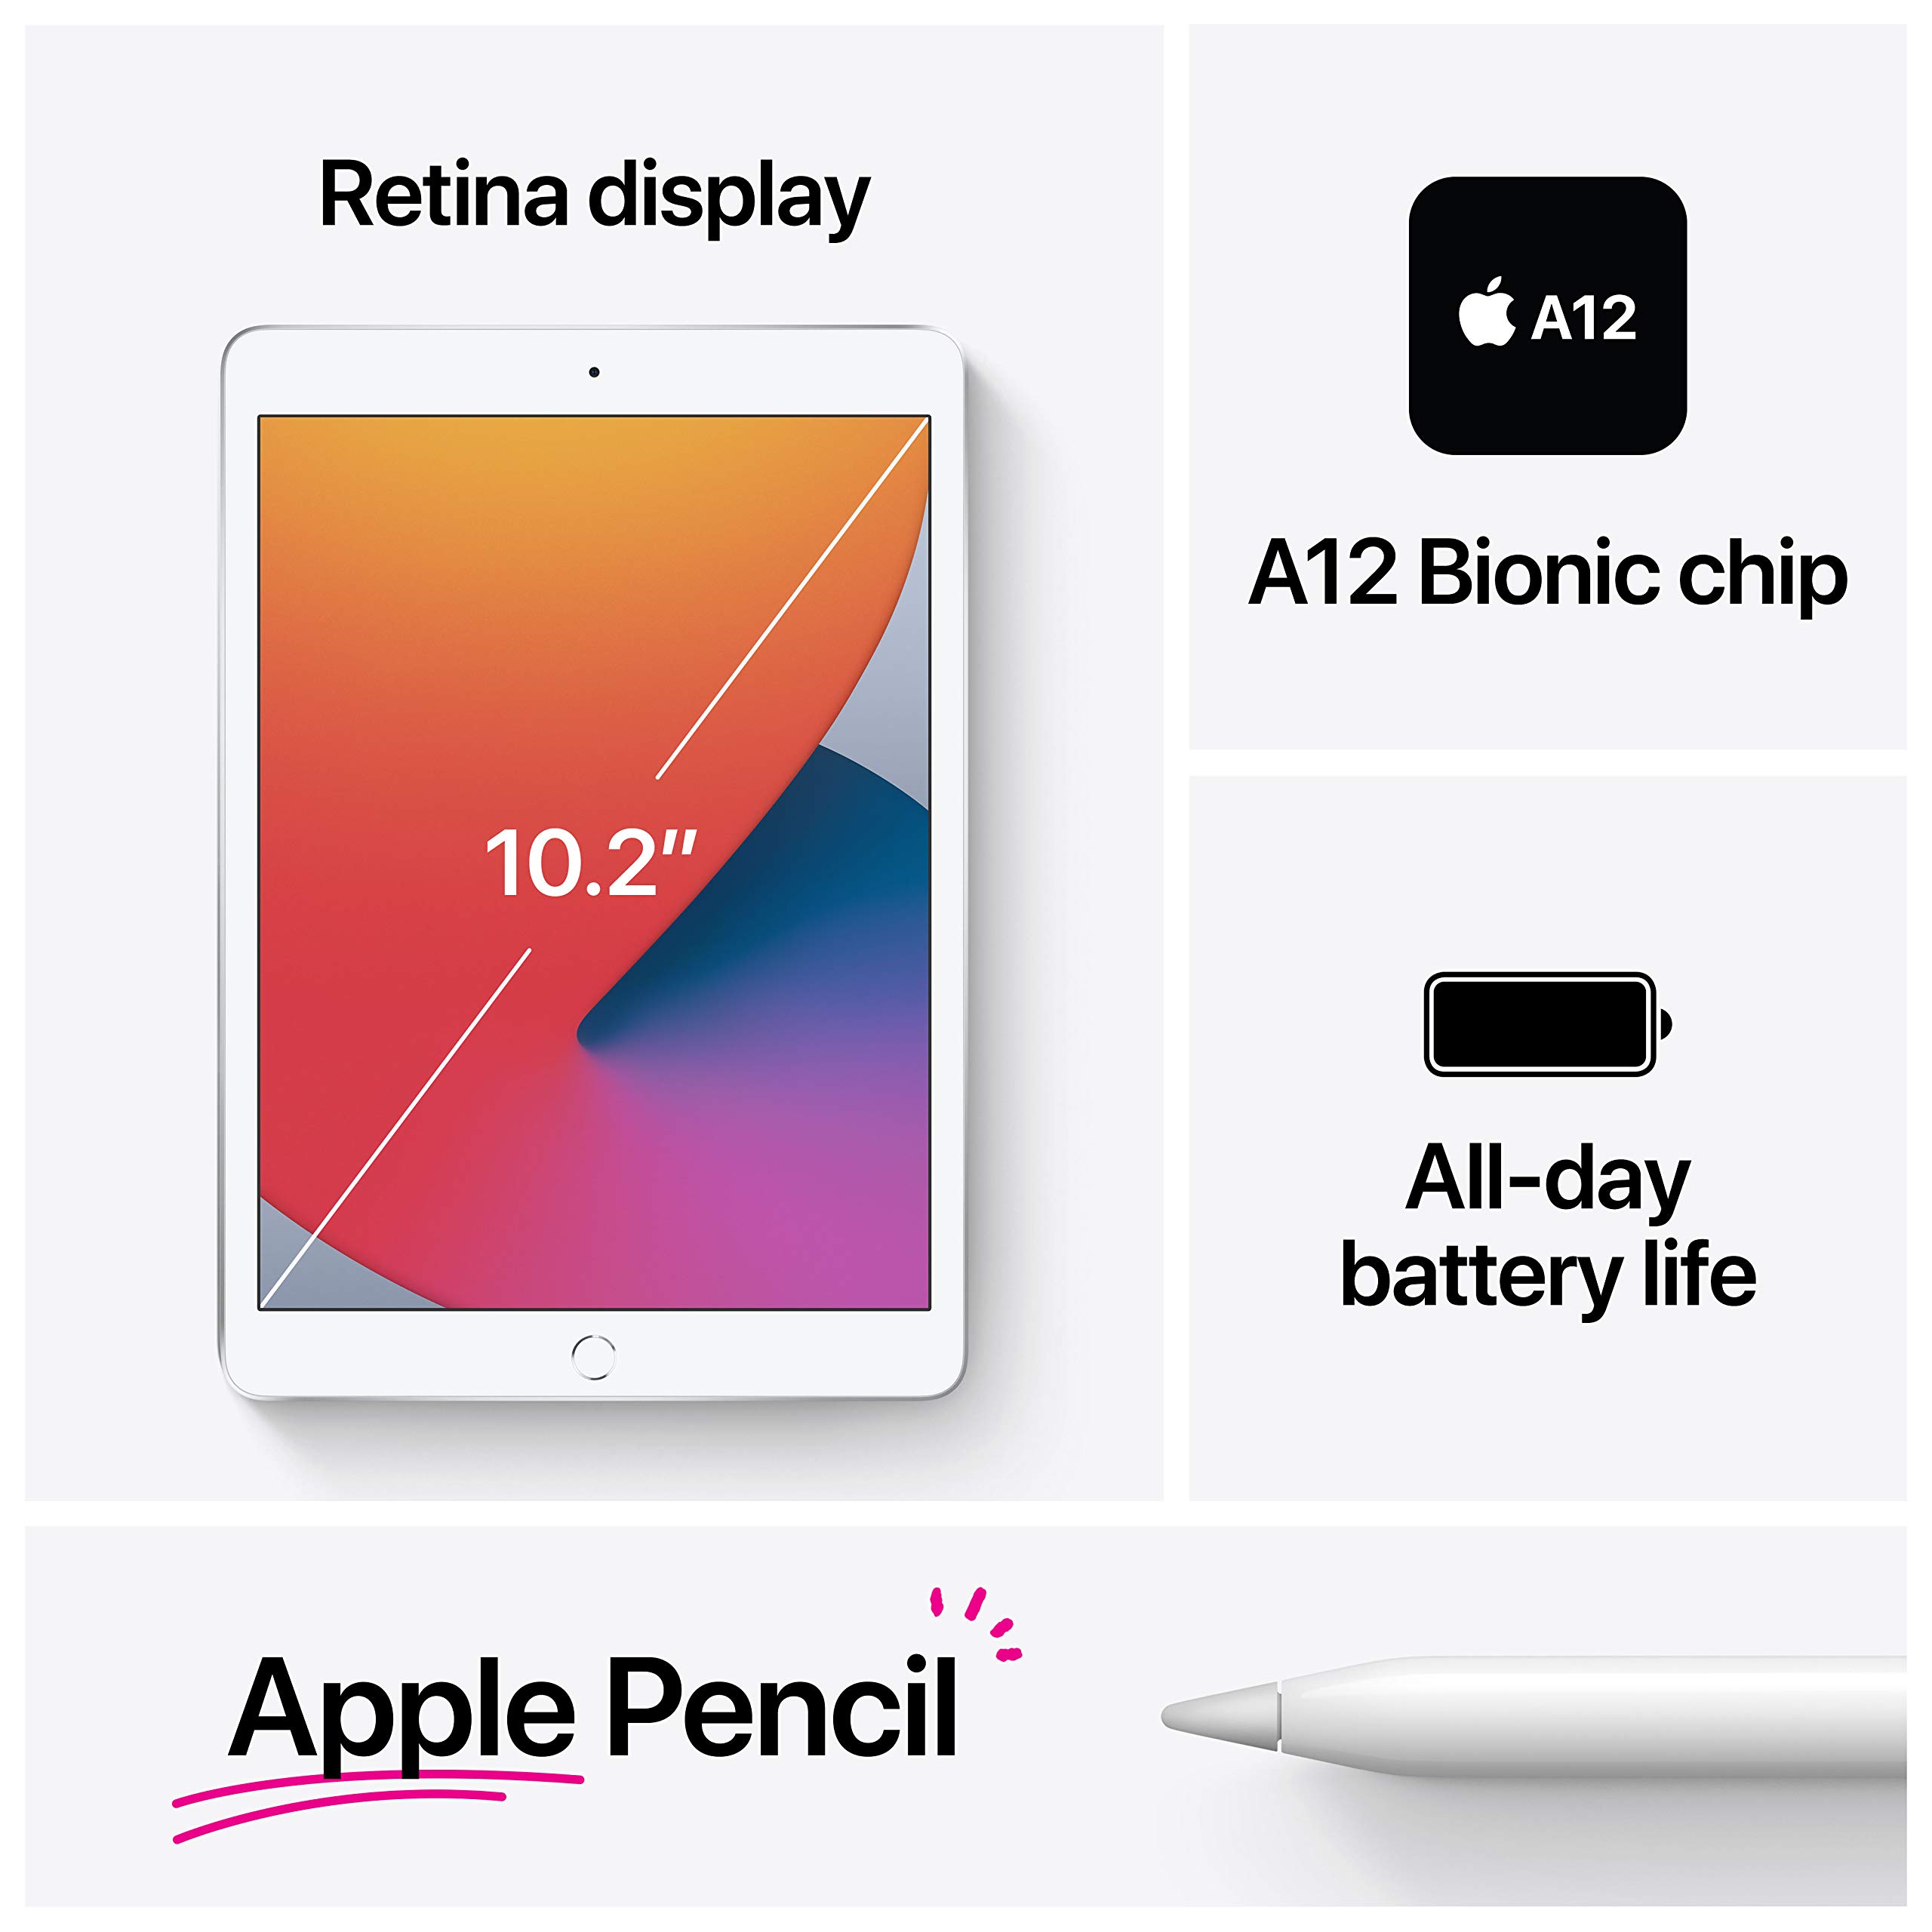 Apple 2020 iPad (10.2-inch, Wi-Fi, 128GB) - Silver (8th Generation)